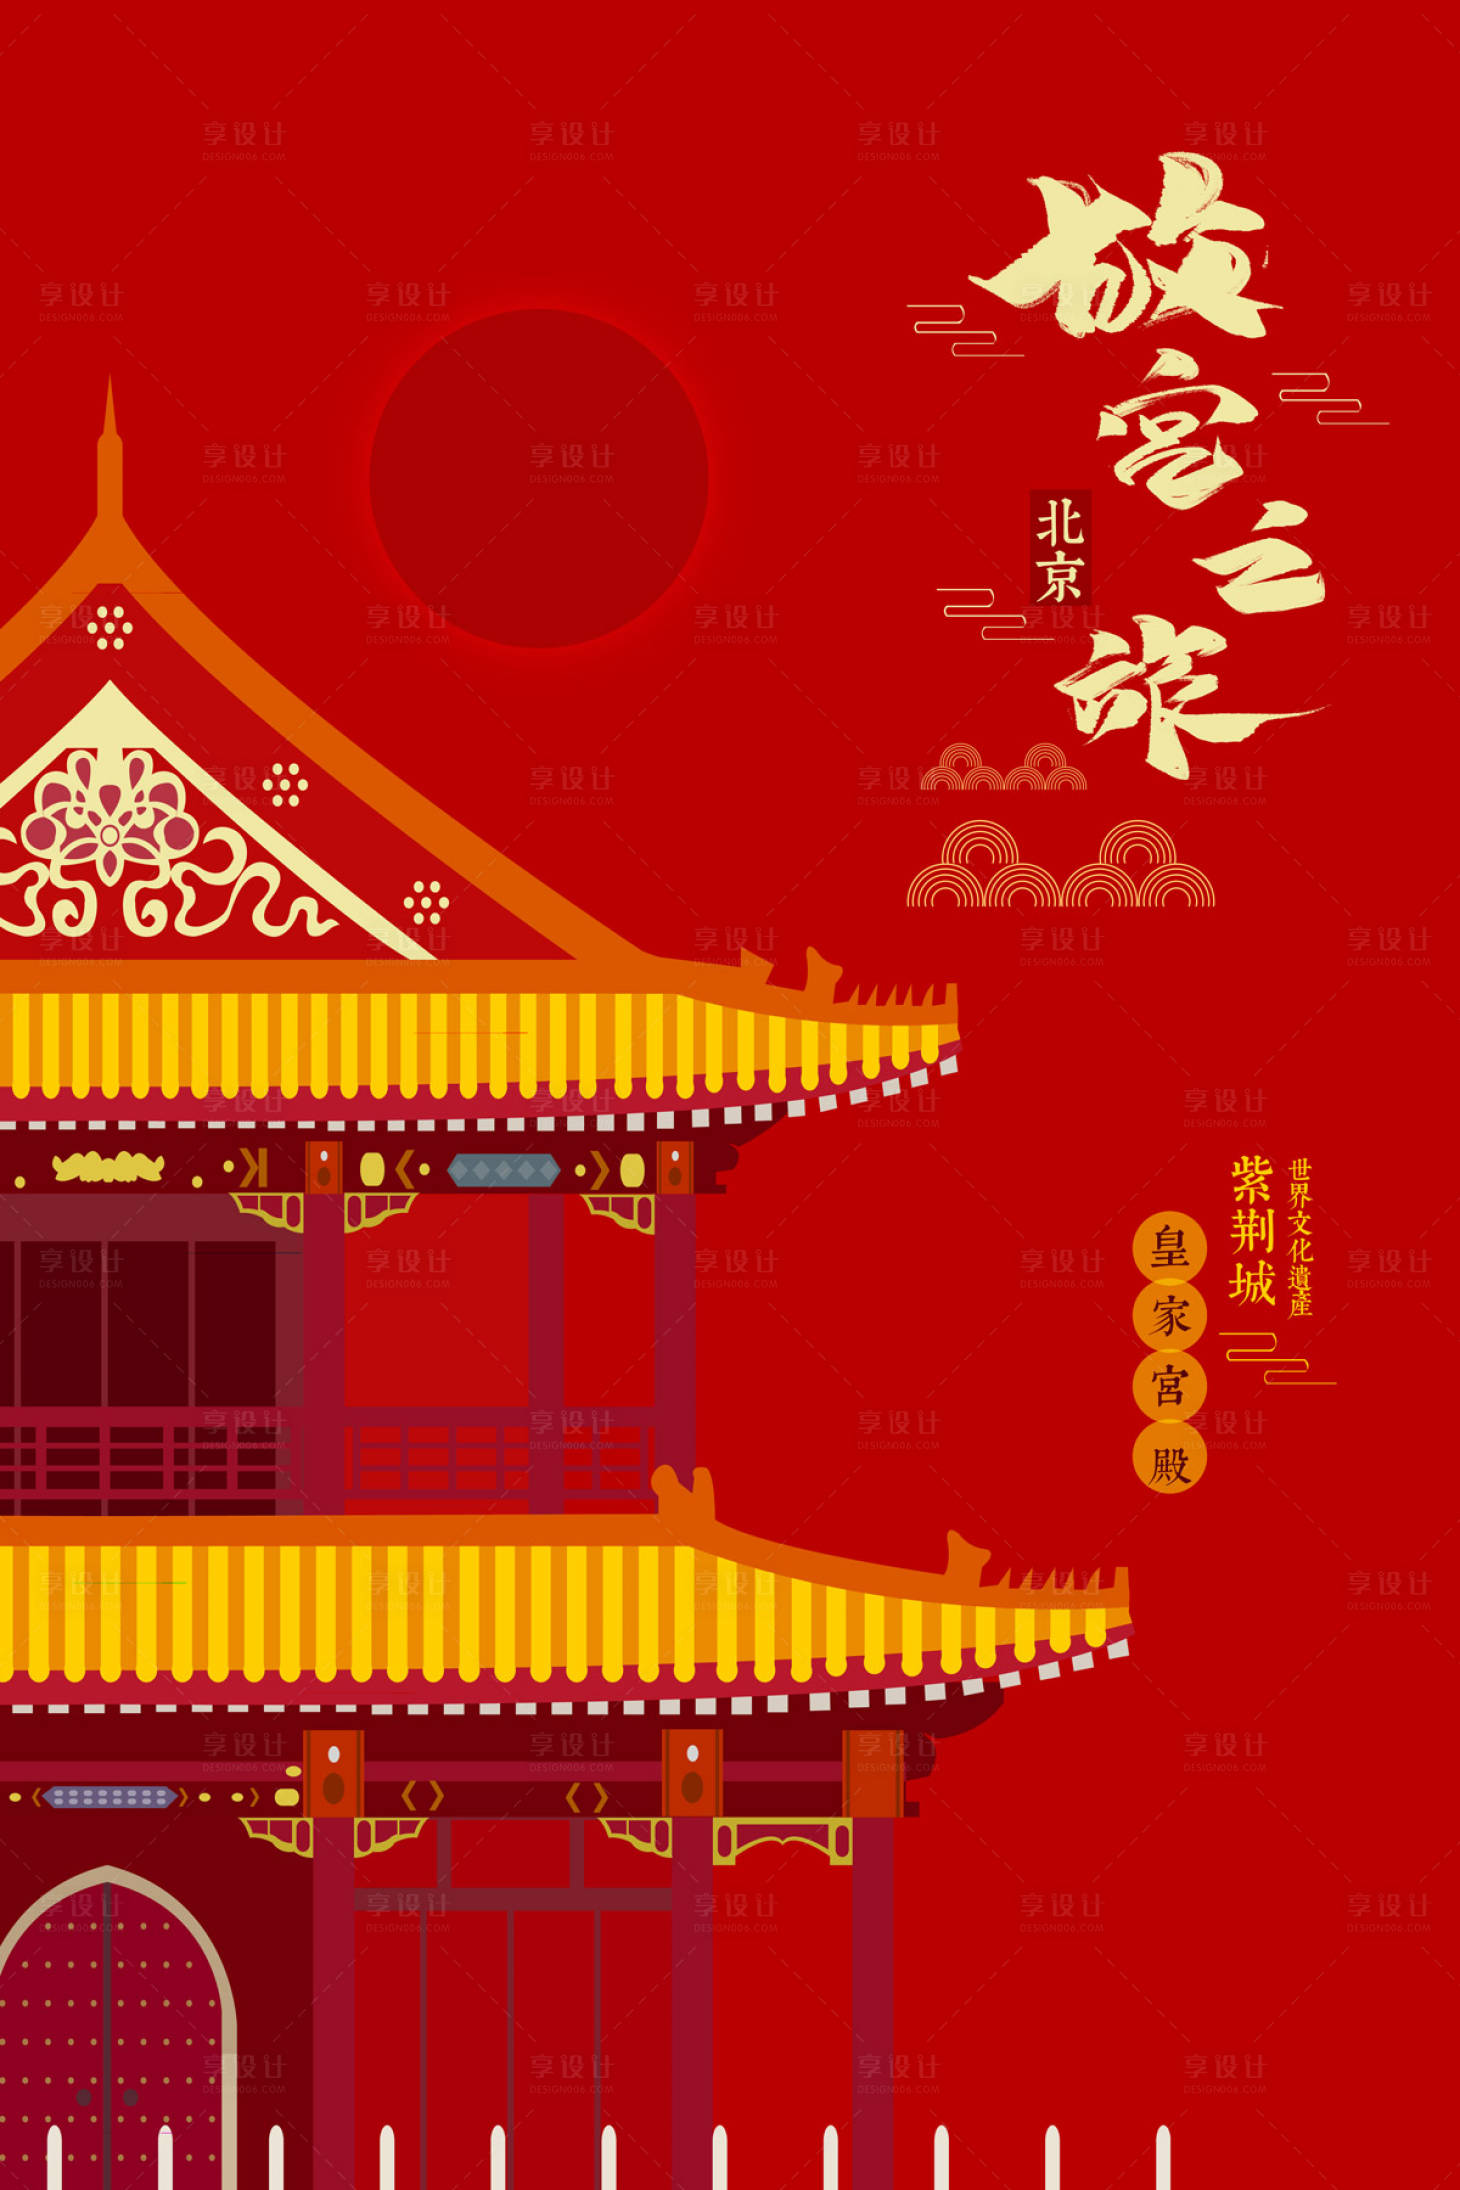 中国红色楼阁古楼故宫旅游海报